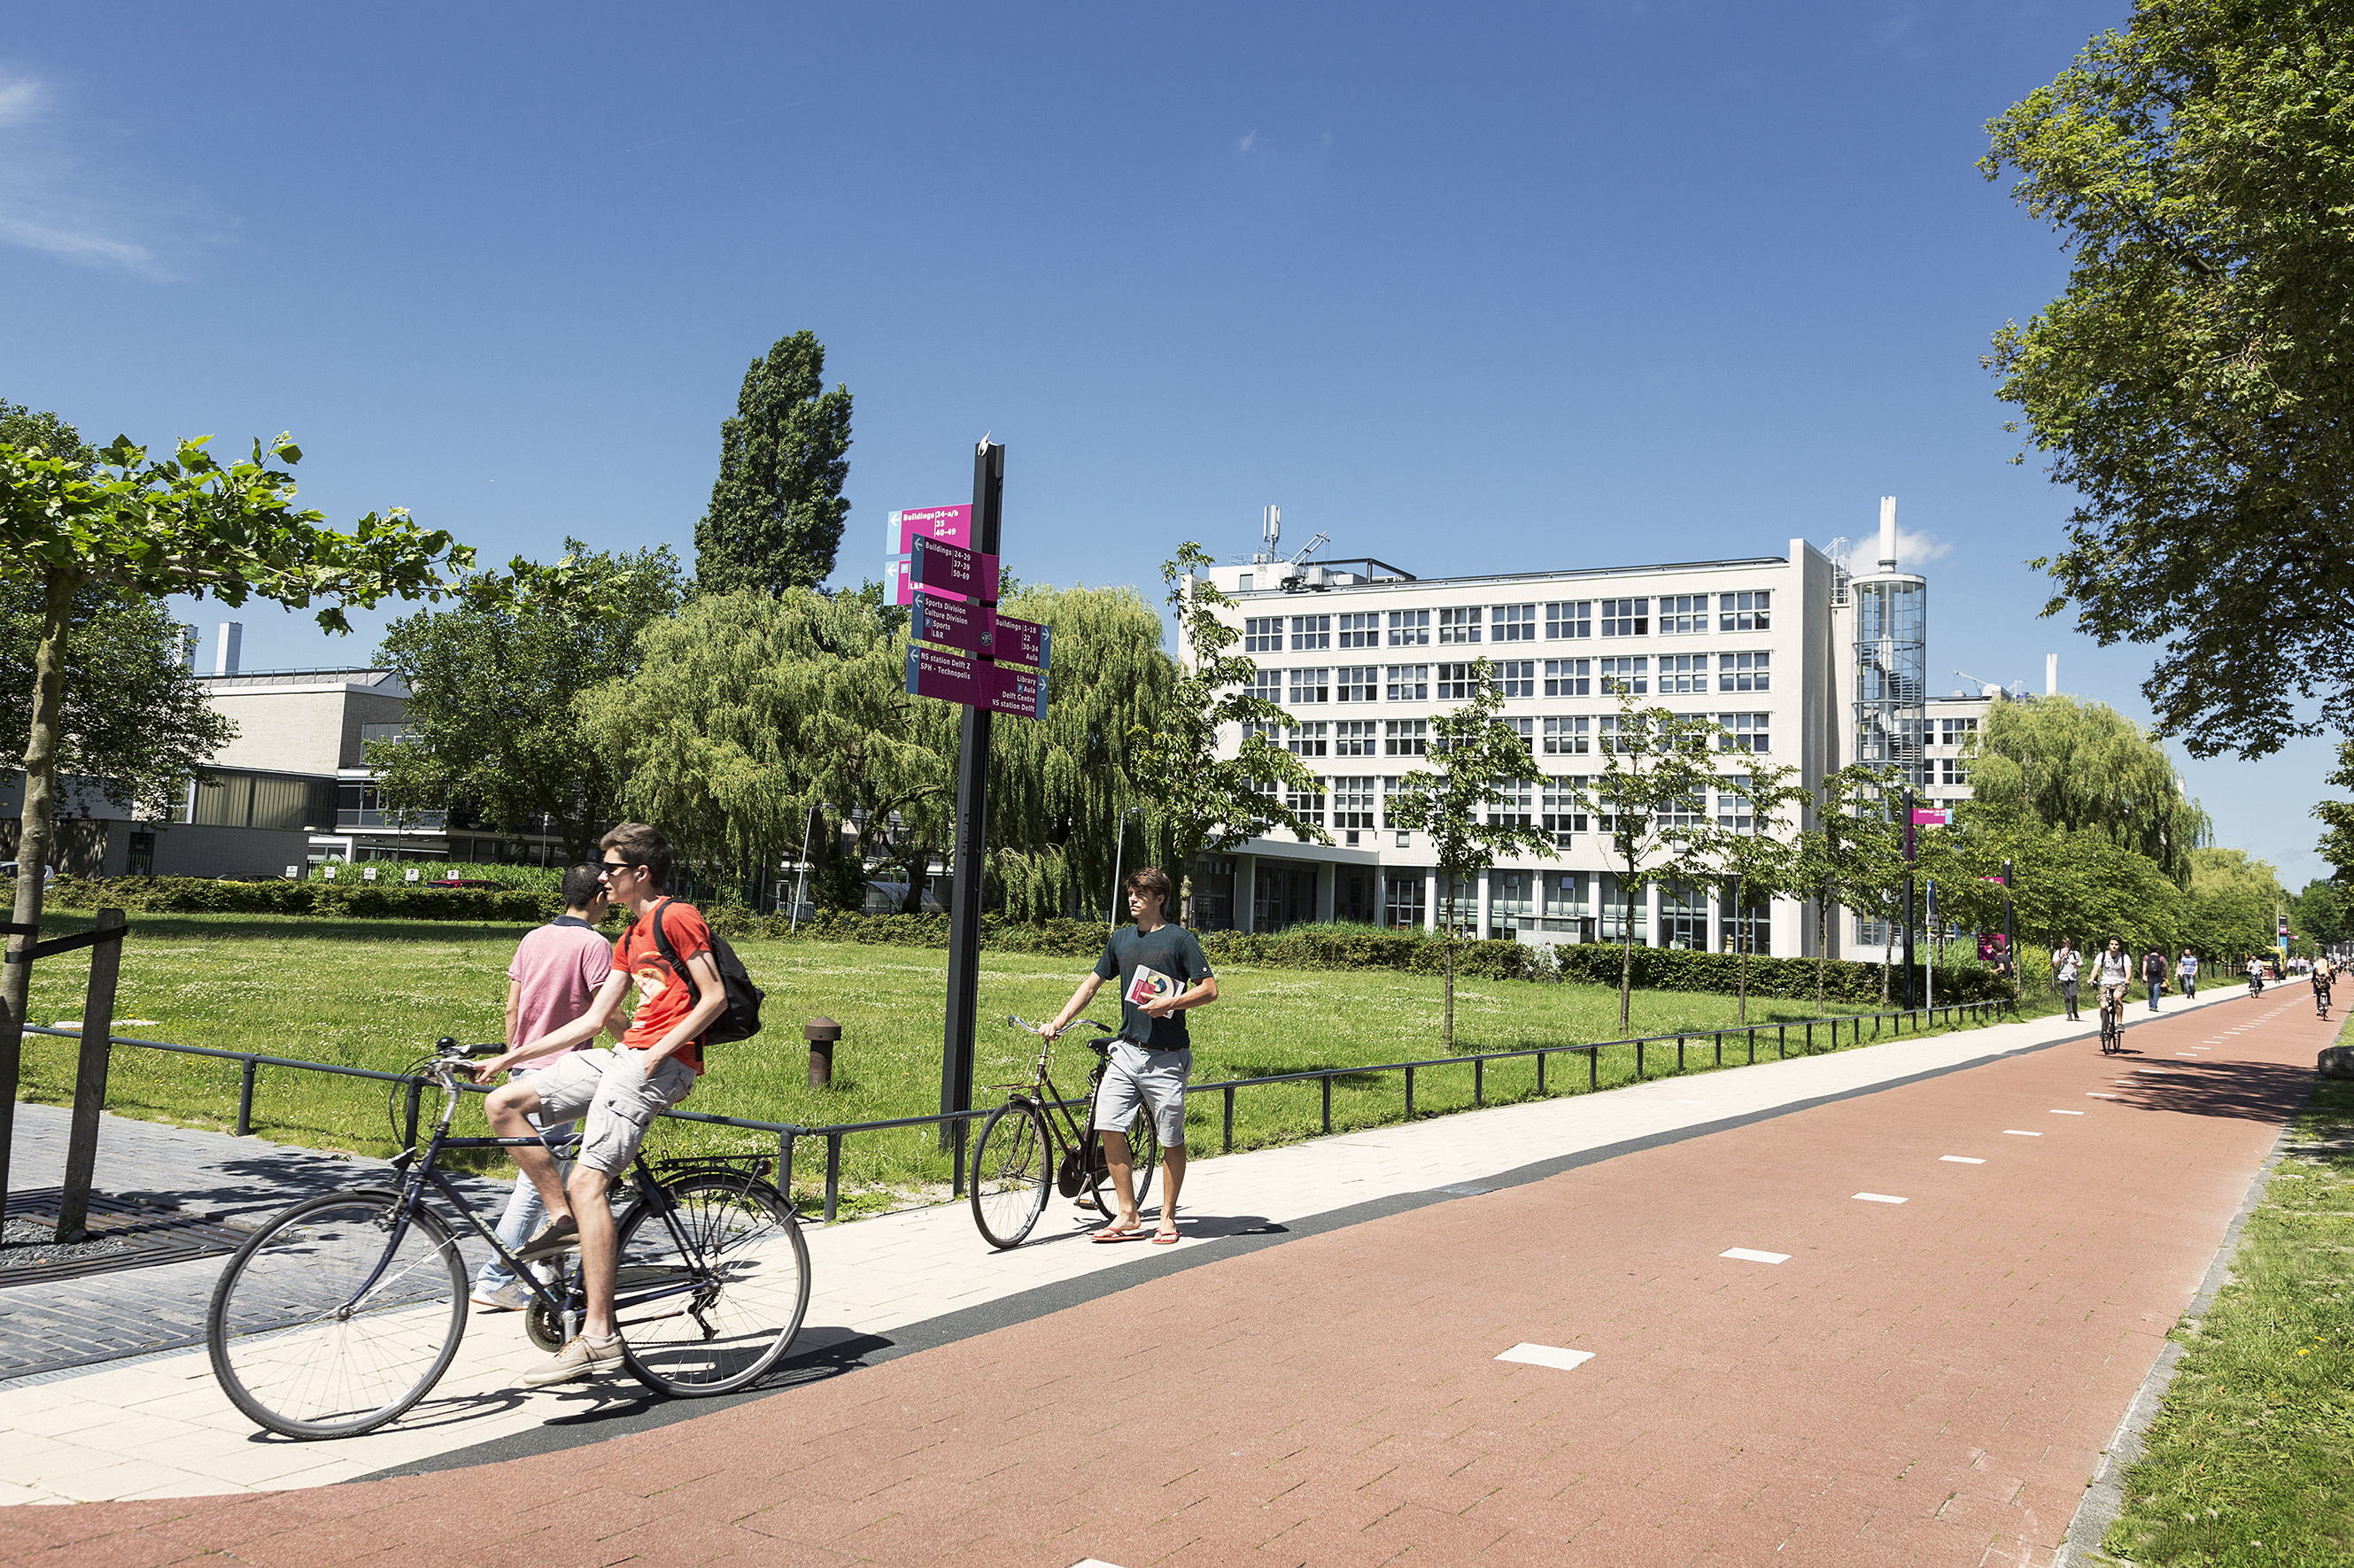 Нидерланды сравнительно недавно вышли на международную арену образования, но Делфтский технический университет уже значится в топ-100 лучших вузов мира